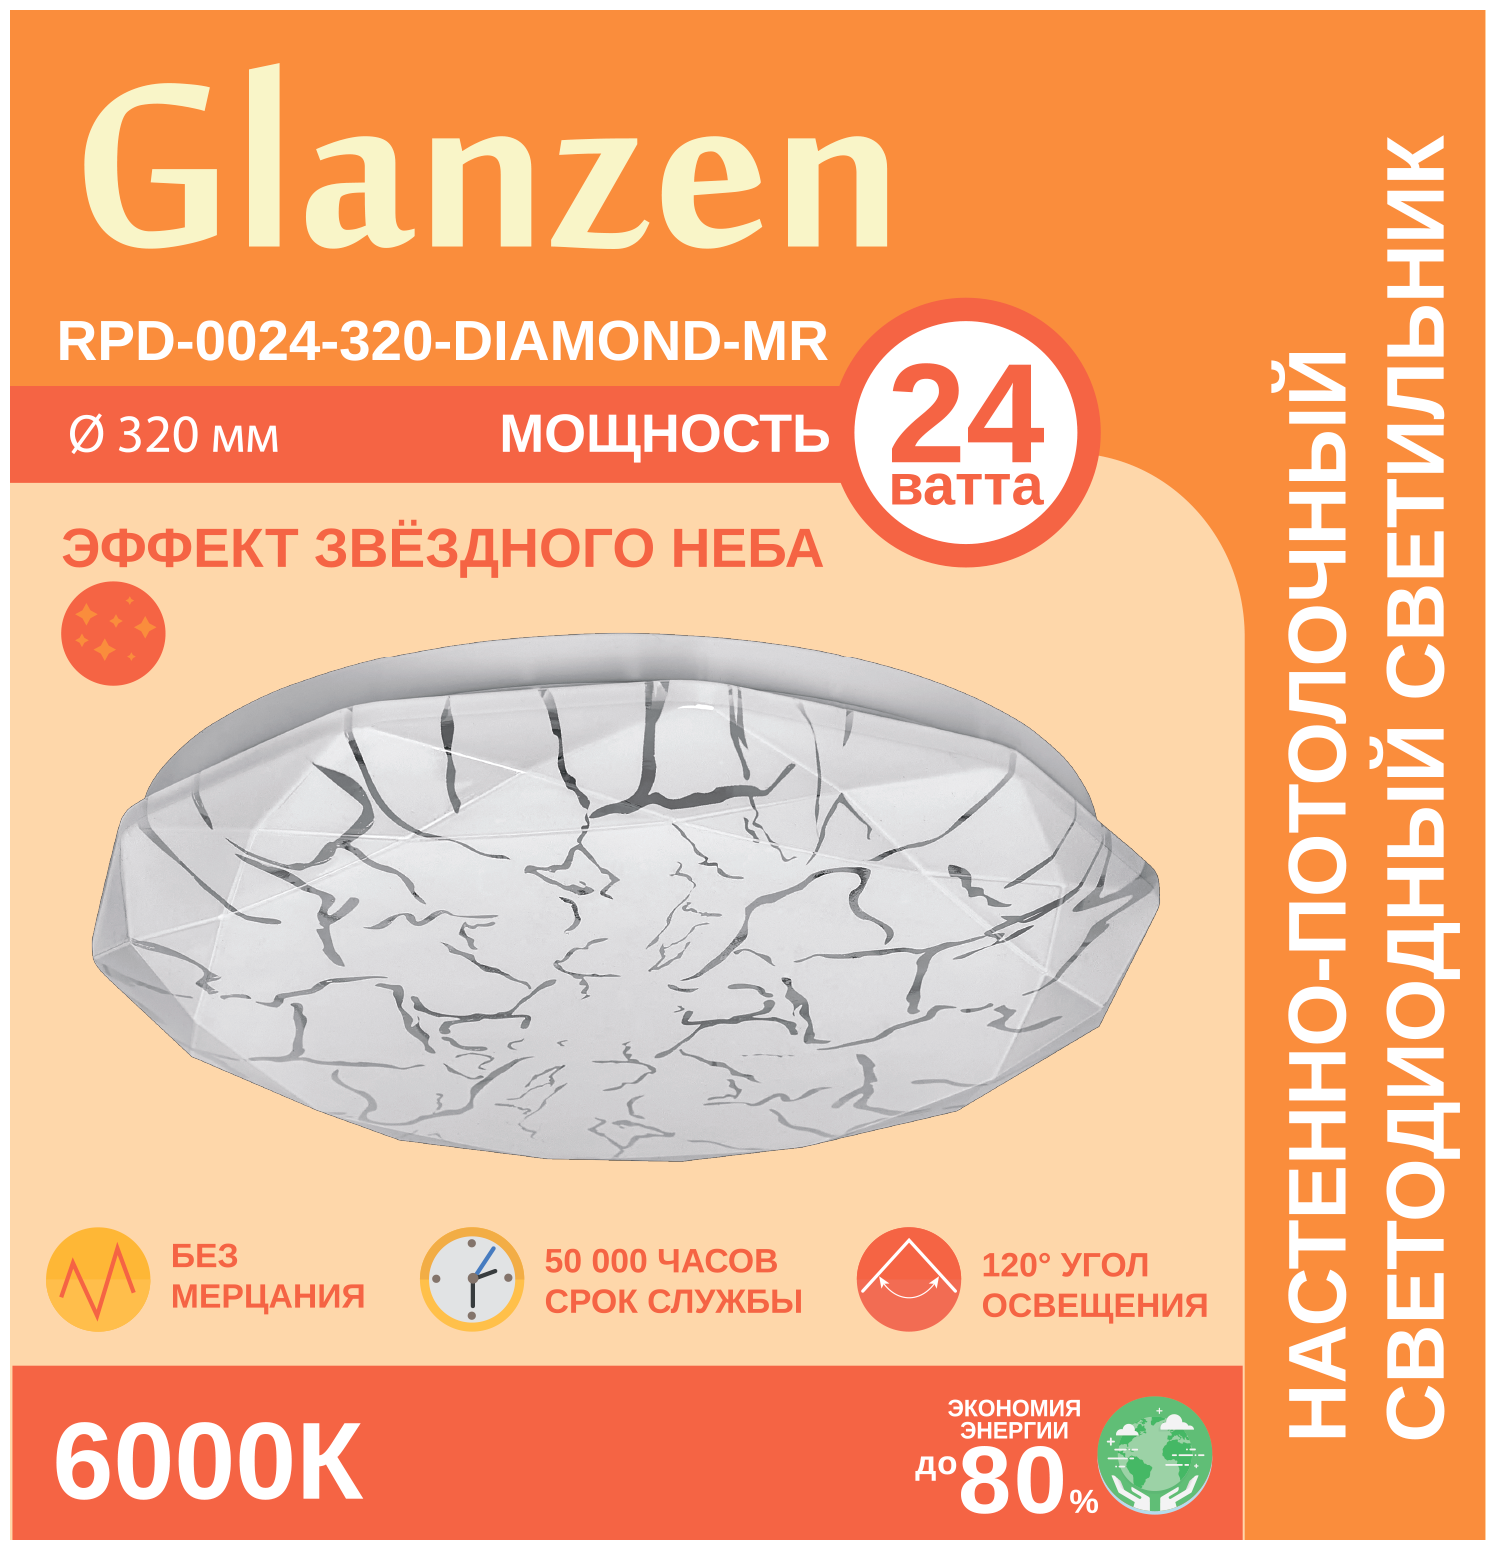 Светодиодный настенно-потолочный светильник GLANZEN 24Вт RPD-0024-320-DIAMOND-MR IP20 6000К